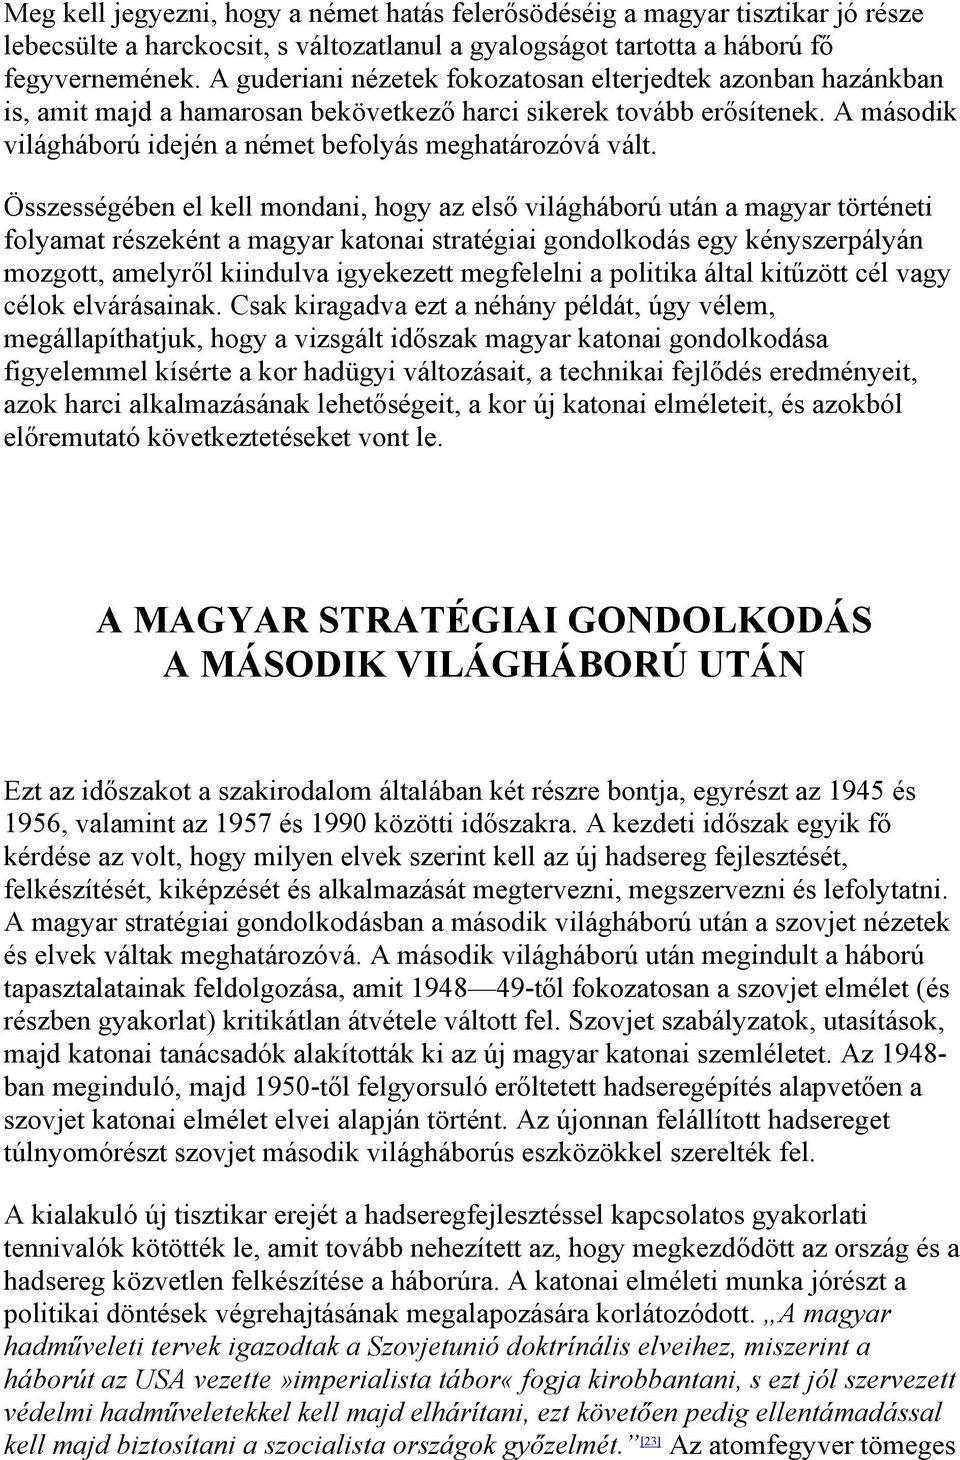 Összességében el kell mondani, hogy az első világháború után a magyar történeti folyamat részeként a magyar katonai stratégiai gondolkodás egy kényszerpályán mozgott, amelyről kiindulva igyekezett